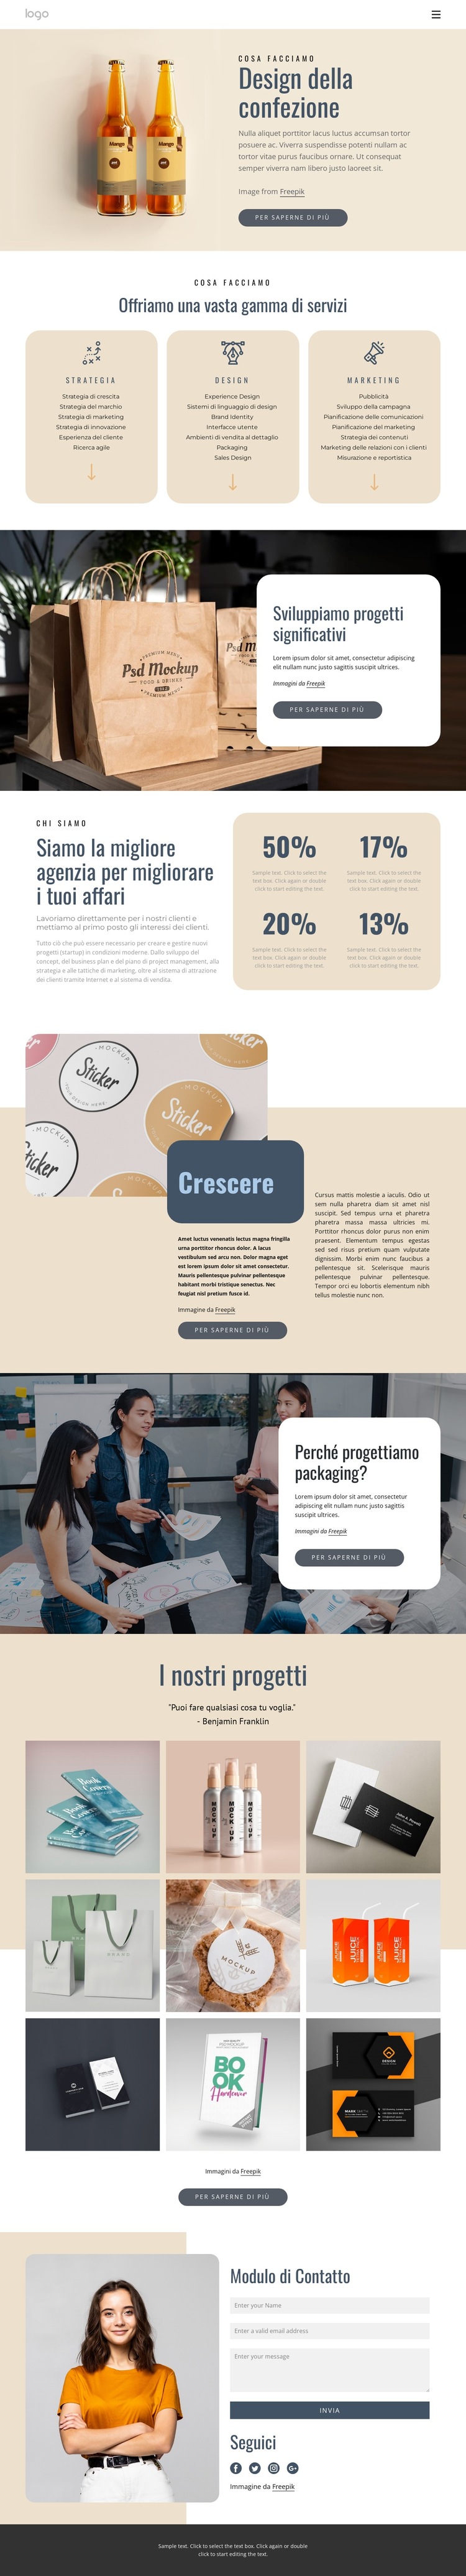 Design del marchio e del packaging Modello di sito Web